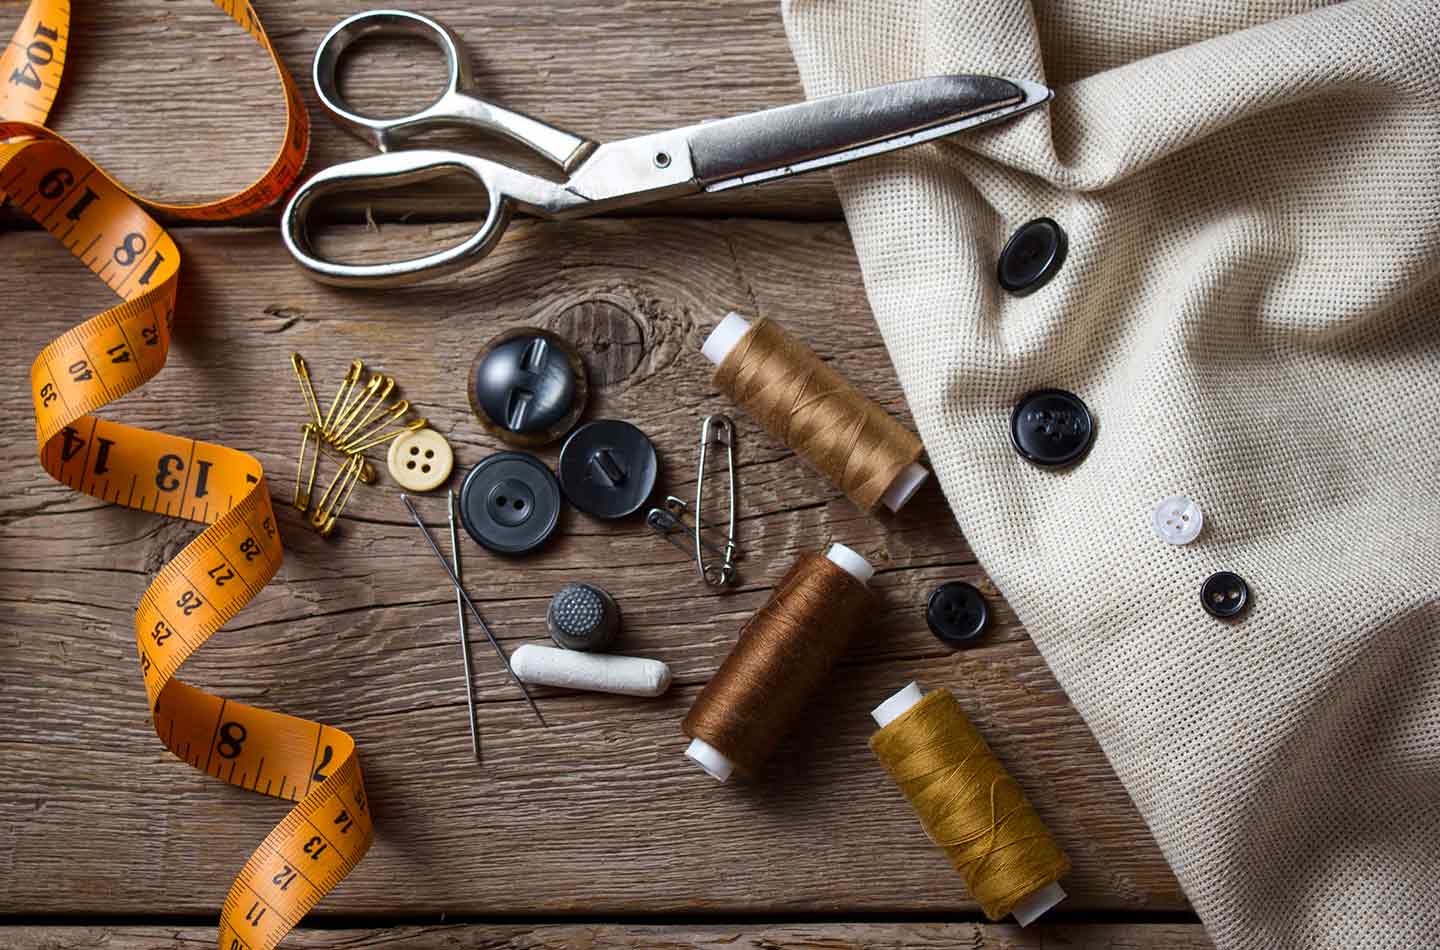 Utensilien zum Nähen auf einem Holztisch mit Stoff, Knöpfen, Maßband und Schere.